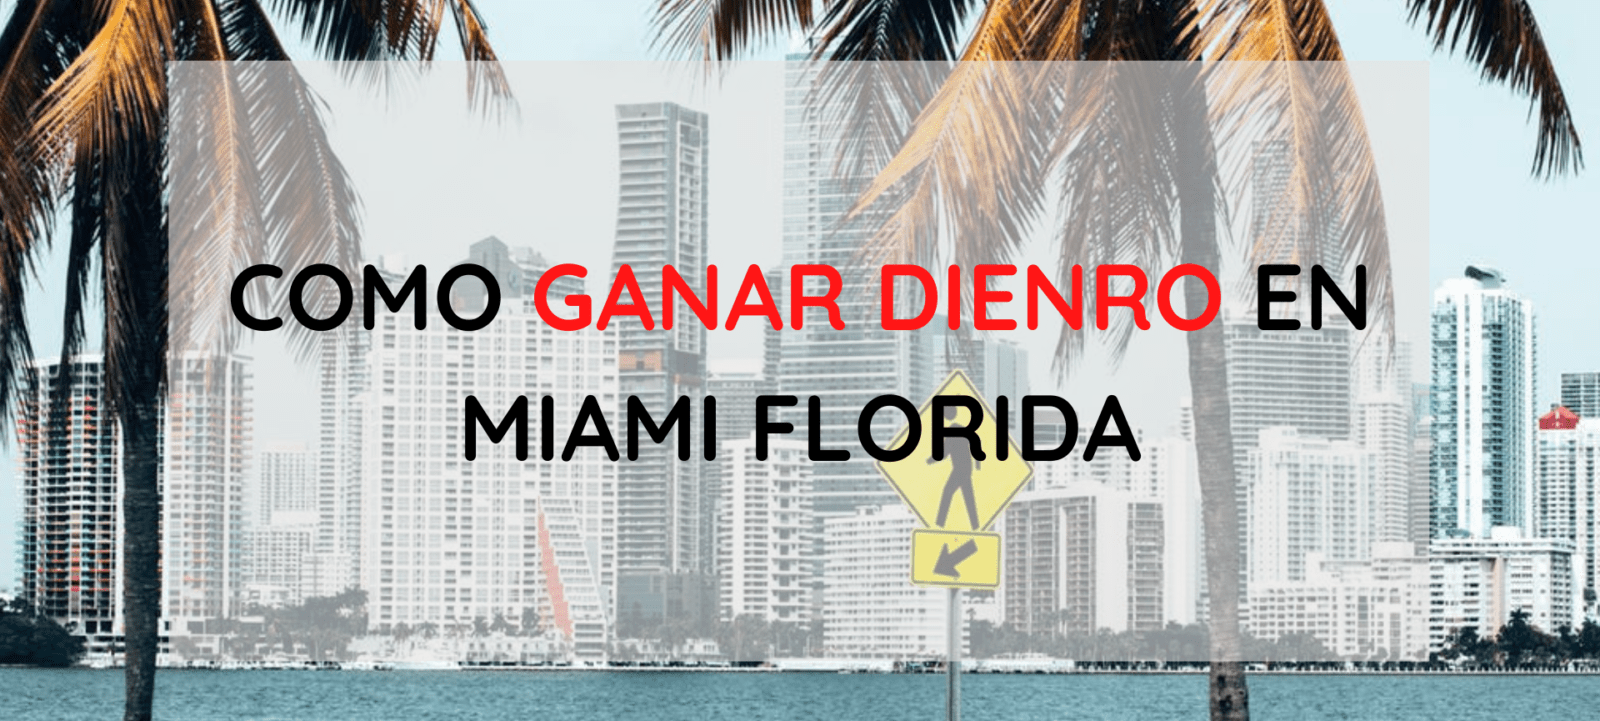 Cómo ganar dinero en Miami Florida